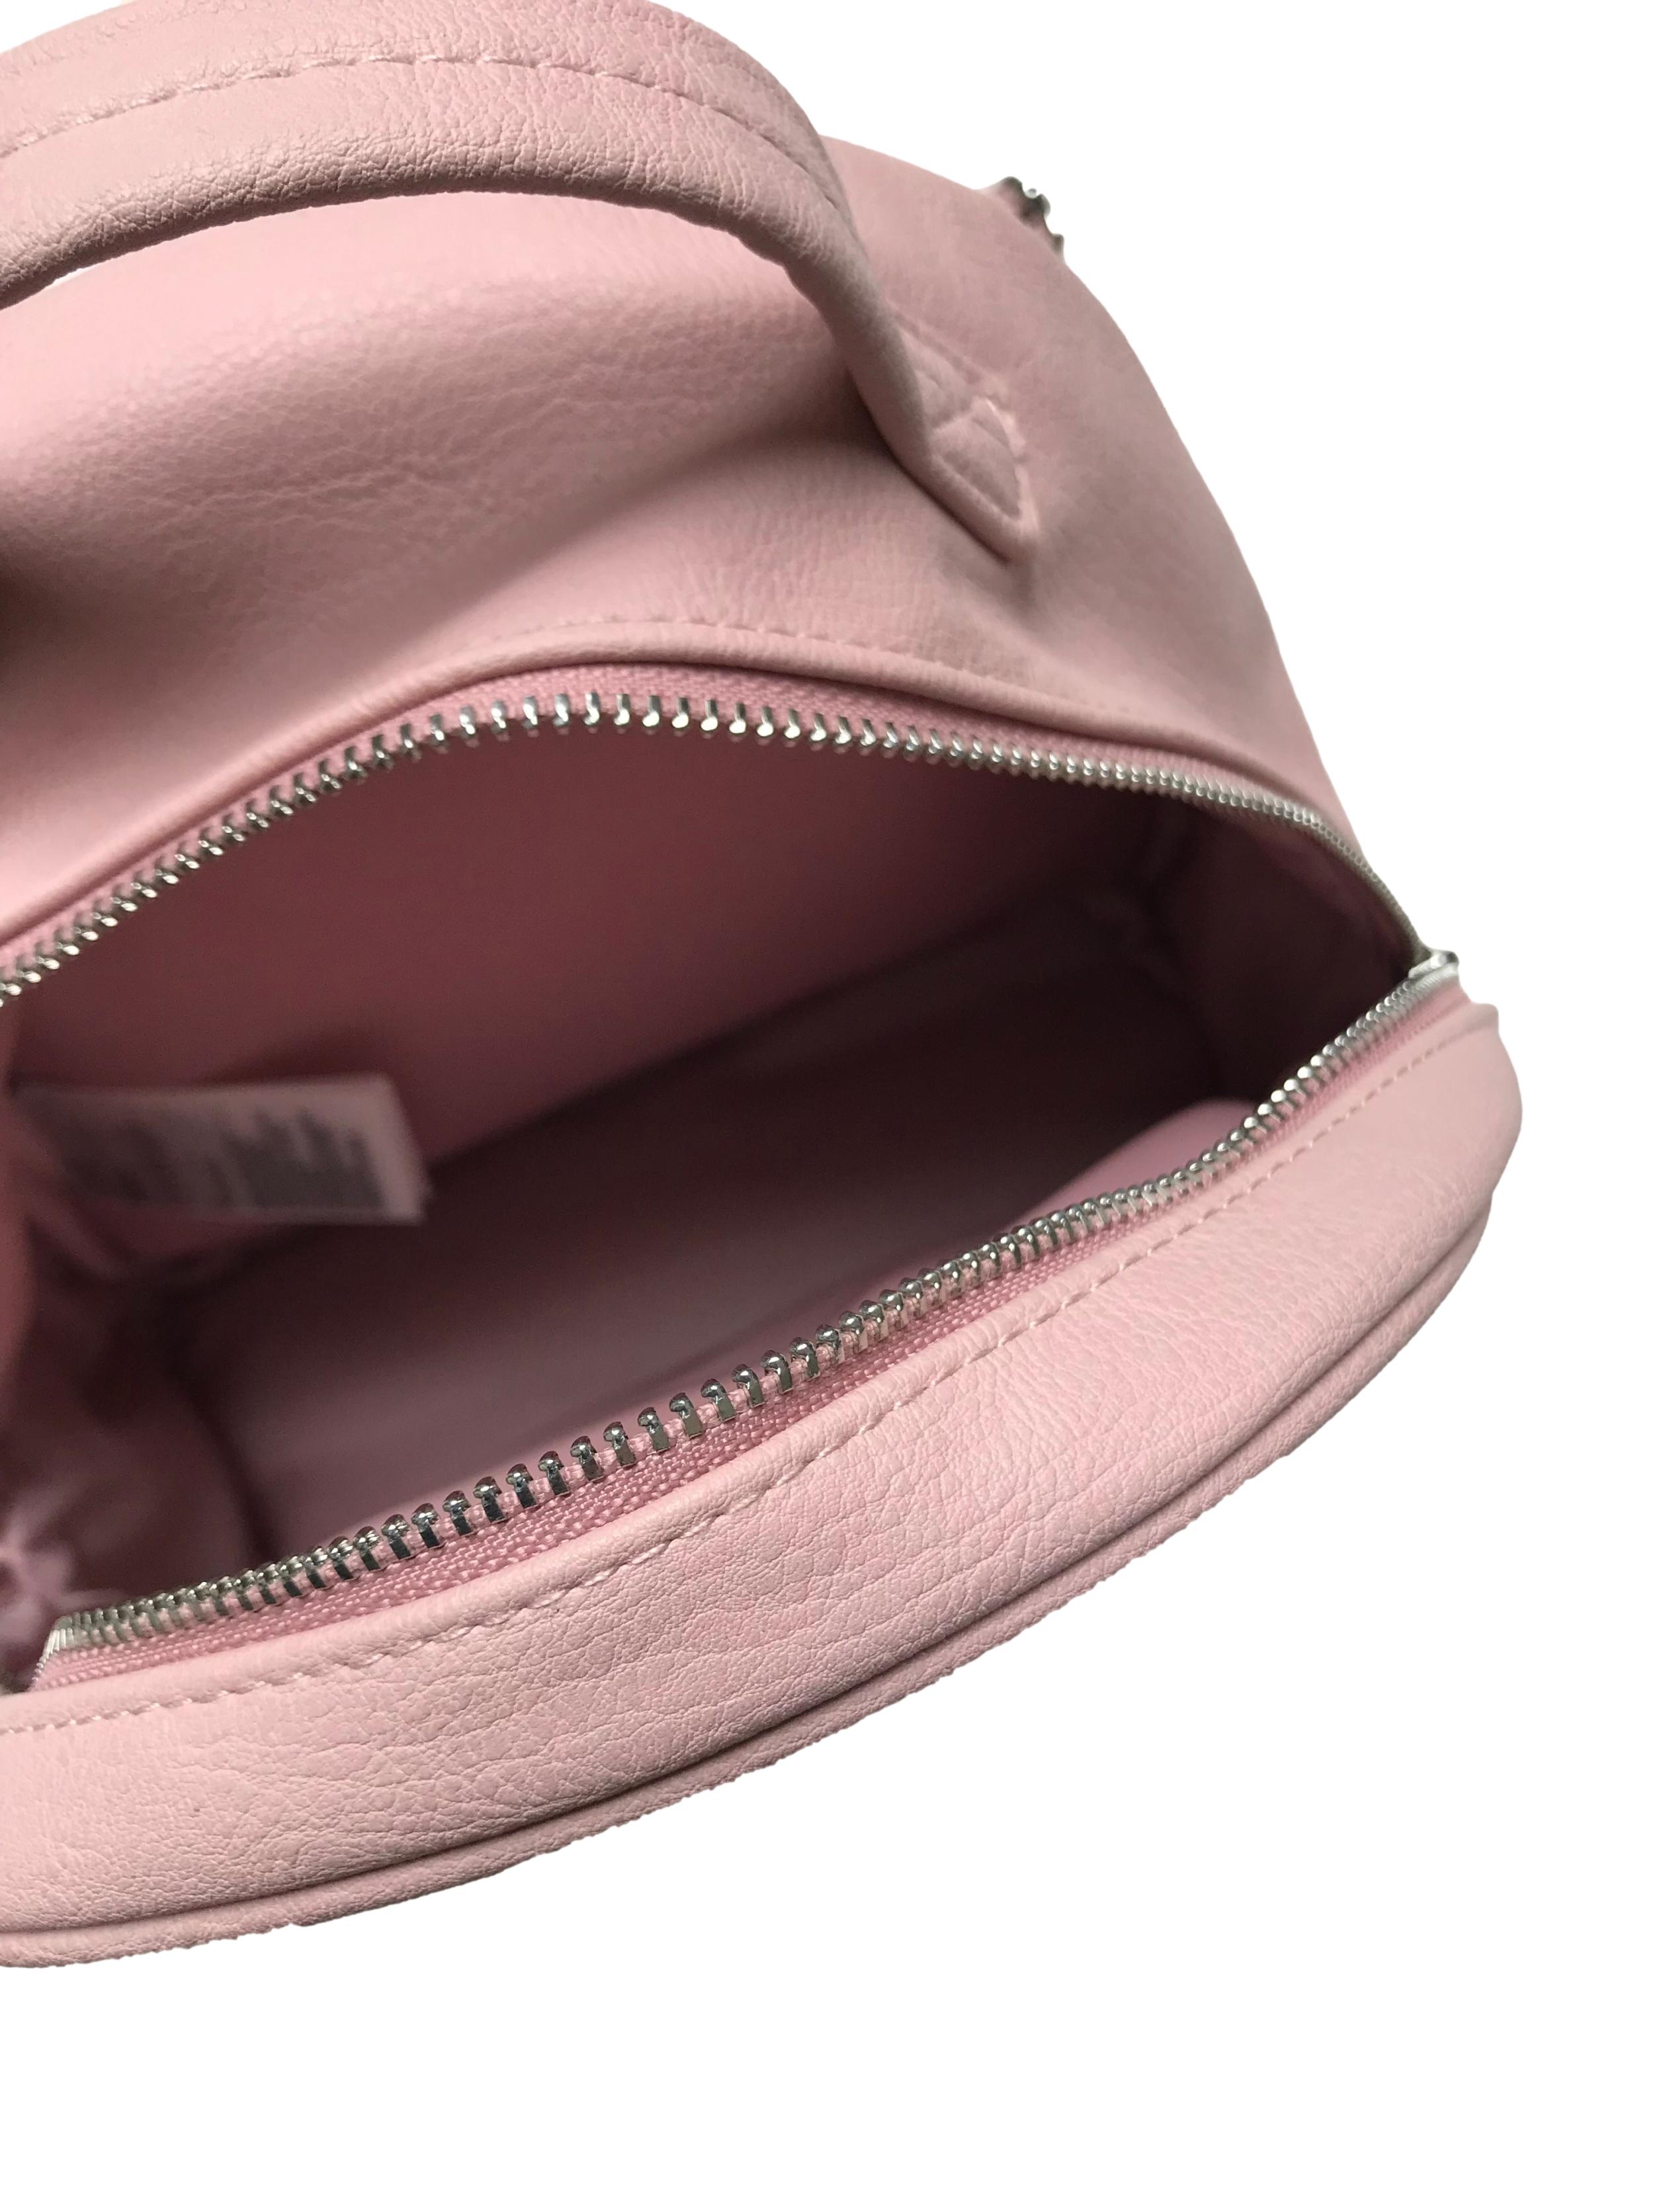 Mochila H&M de cuerina rosa con interior forrado, dos compartimentos con cierre. Medidas 23x20x10cm. Nueva con etiqueta.